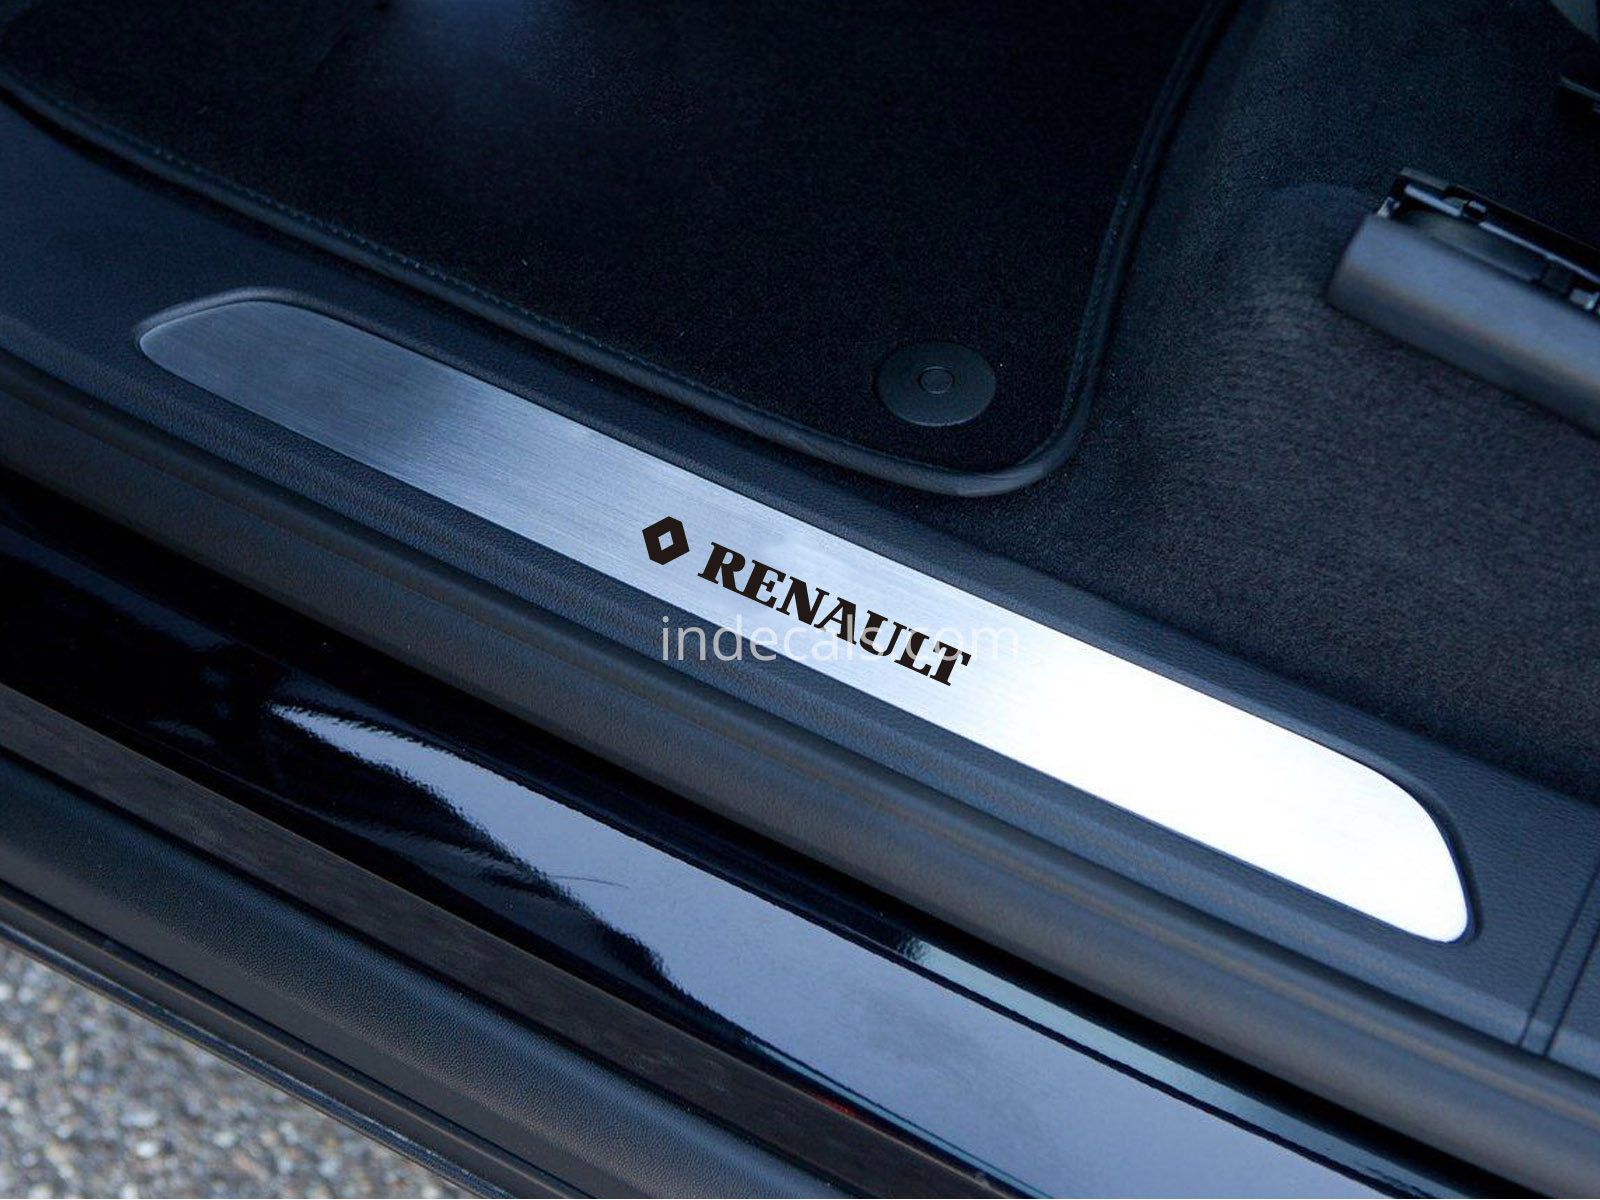 6 x Renault Stickers for Door Sills - Black